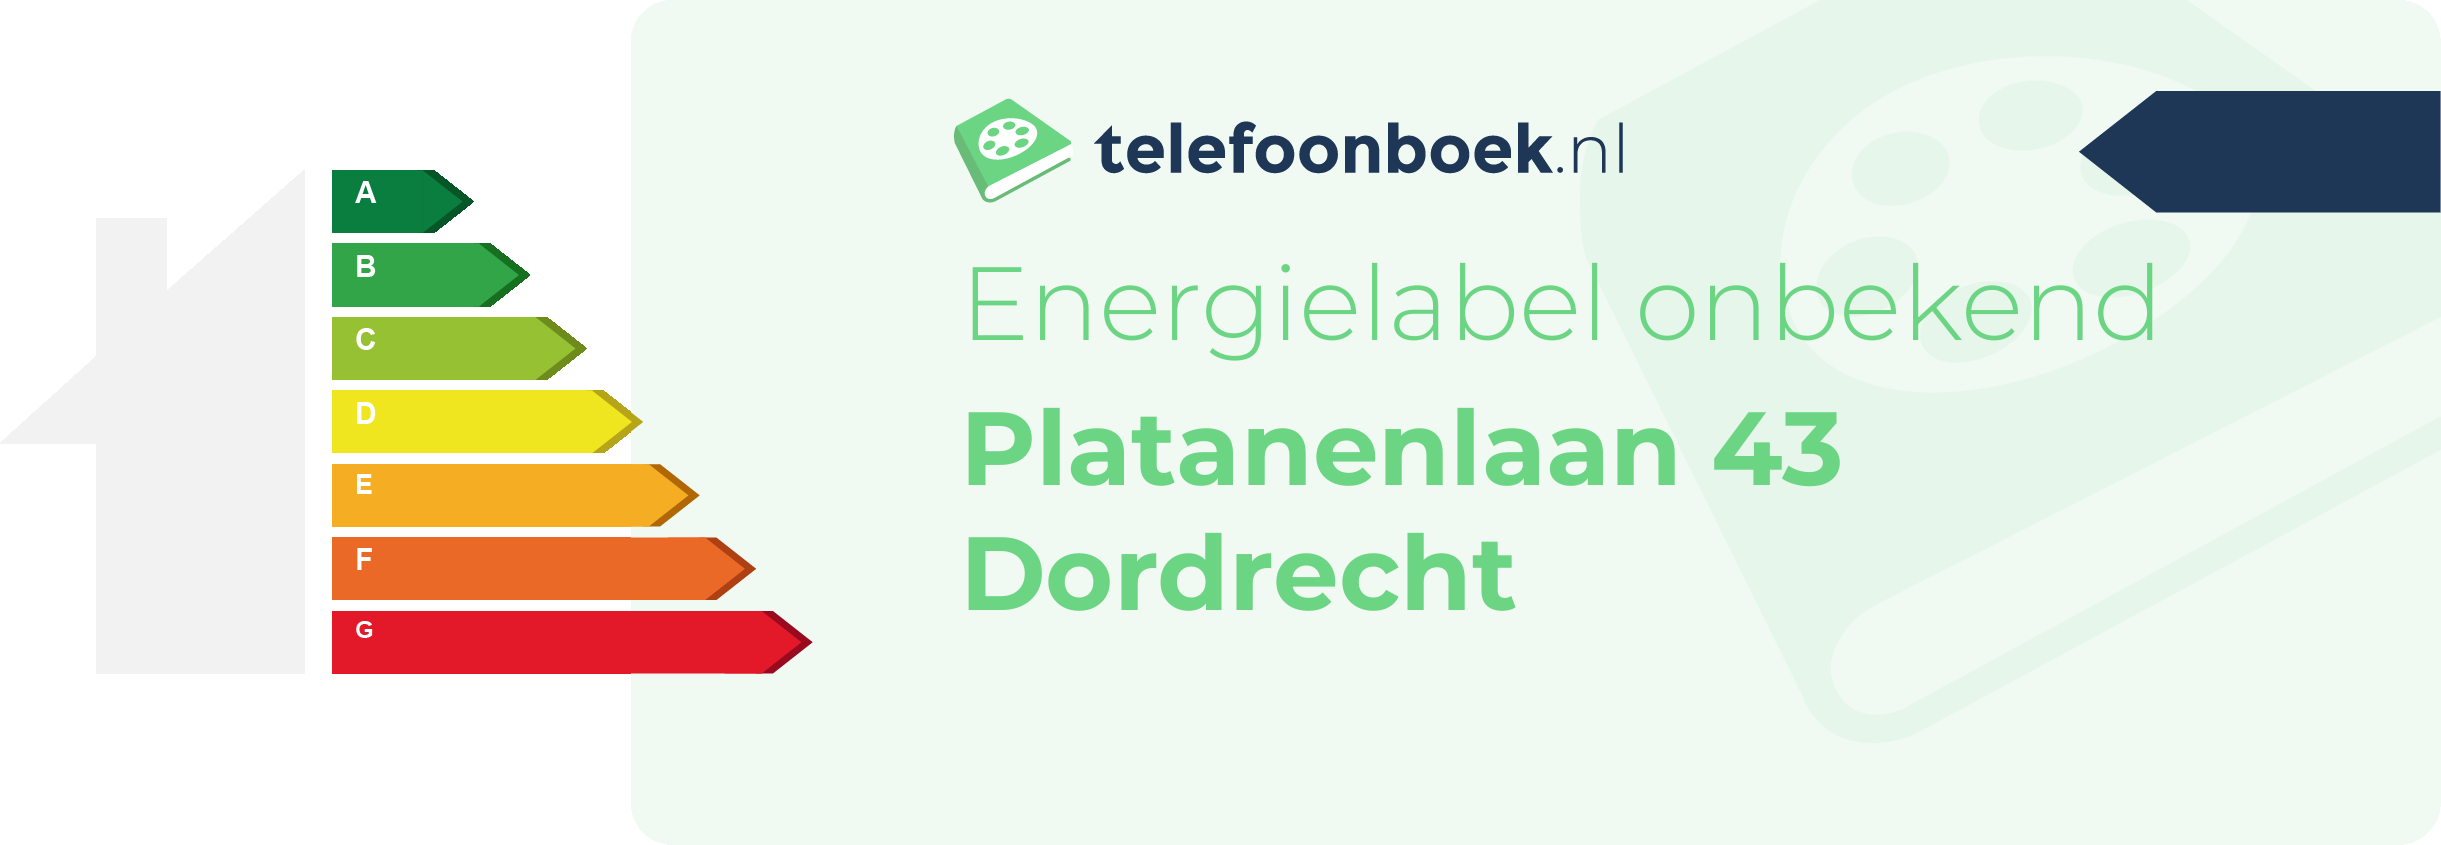 Energielabel Platanenlaan 43 Dordrecht